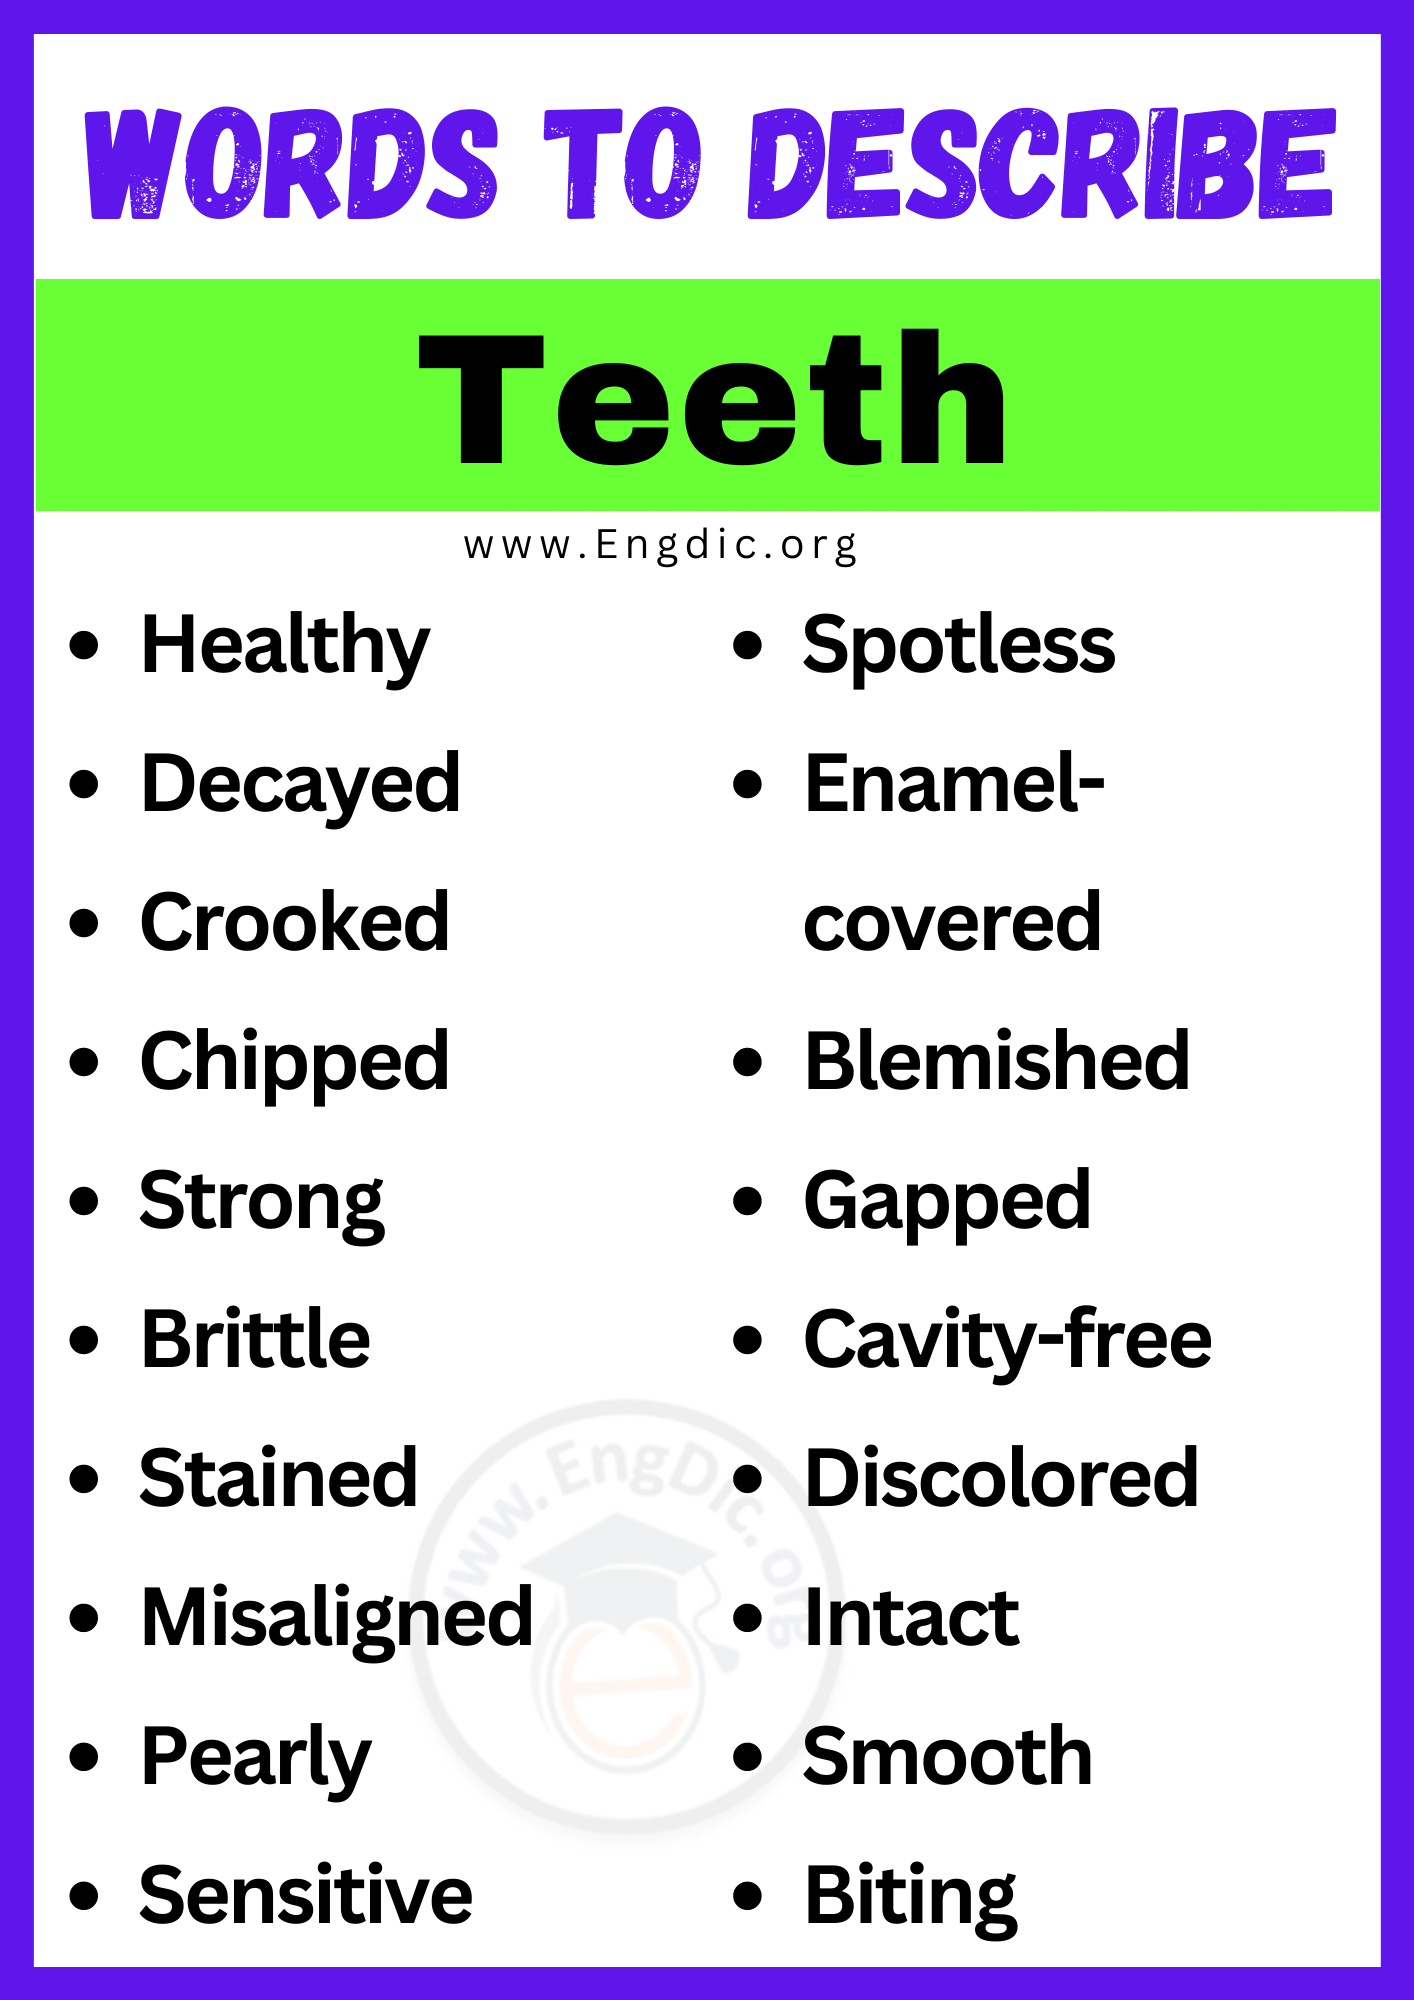 Words to Describe Teeth